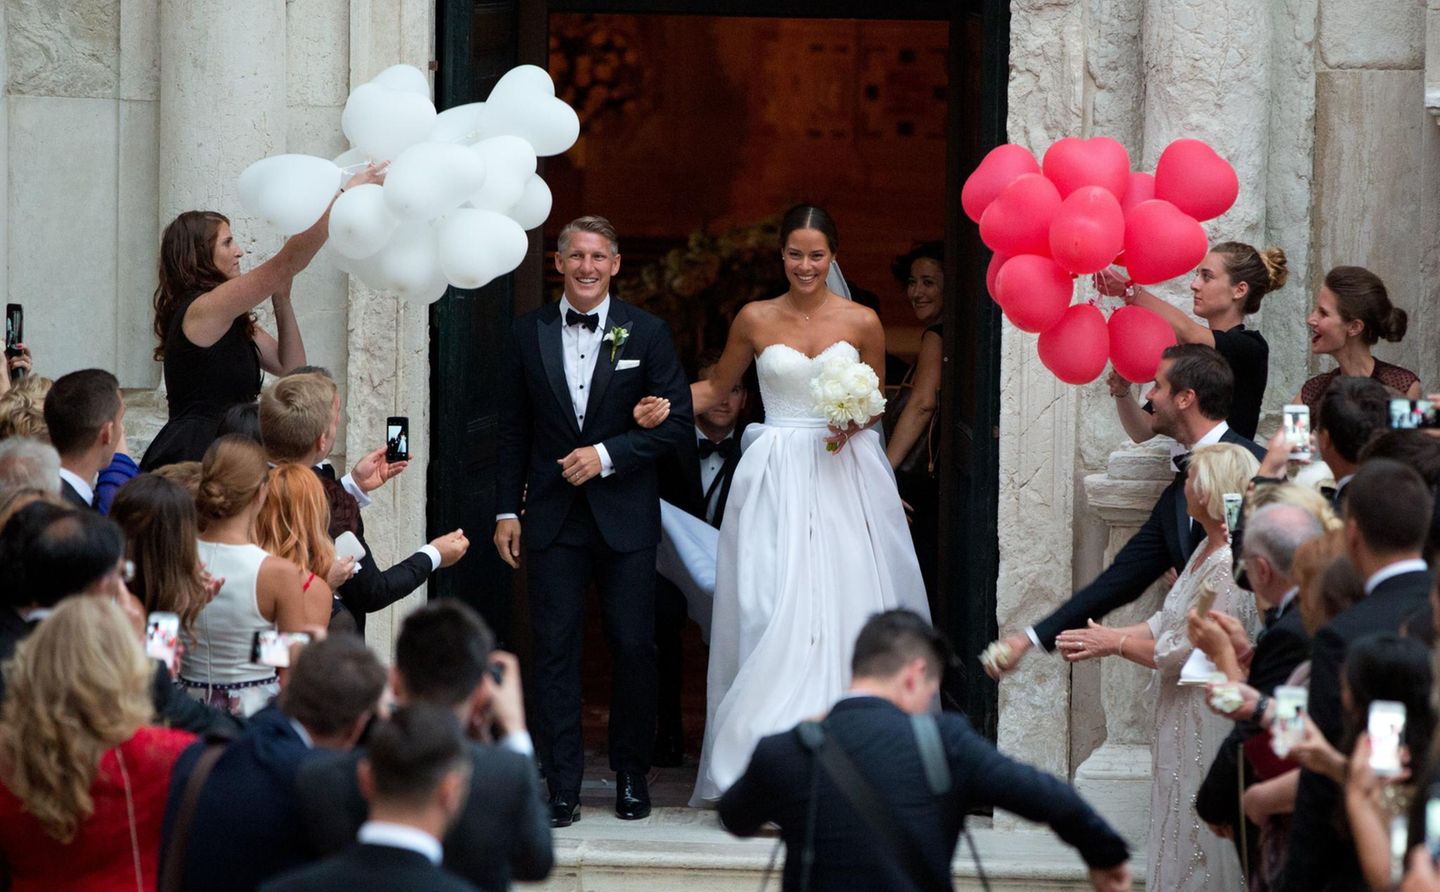 Ja, sie haben sich getraut! Fußballstar Bastian Schweinsteiger und die schöne Tennisspielerin Ana Ivanovi? haben in Venedig geheiratet.